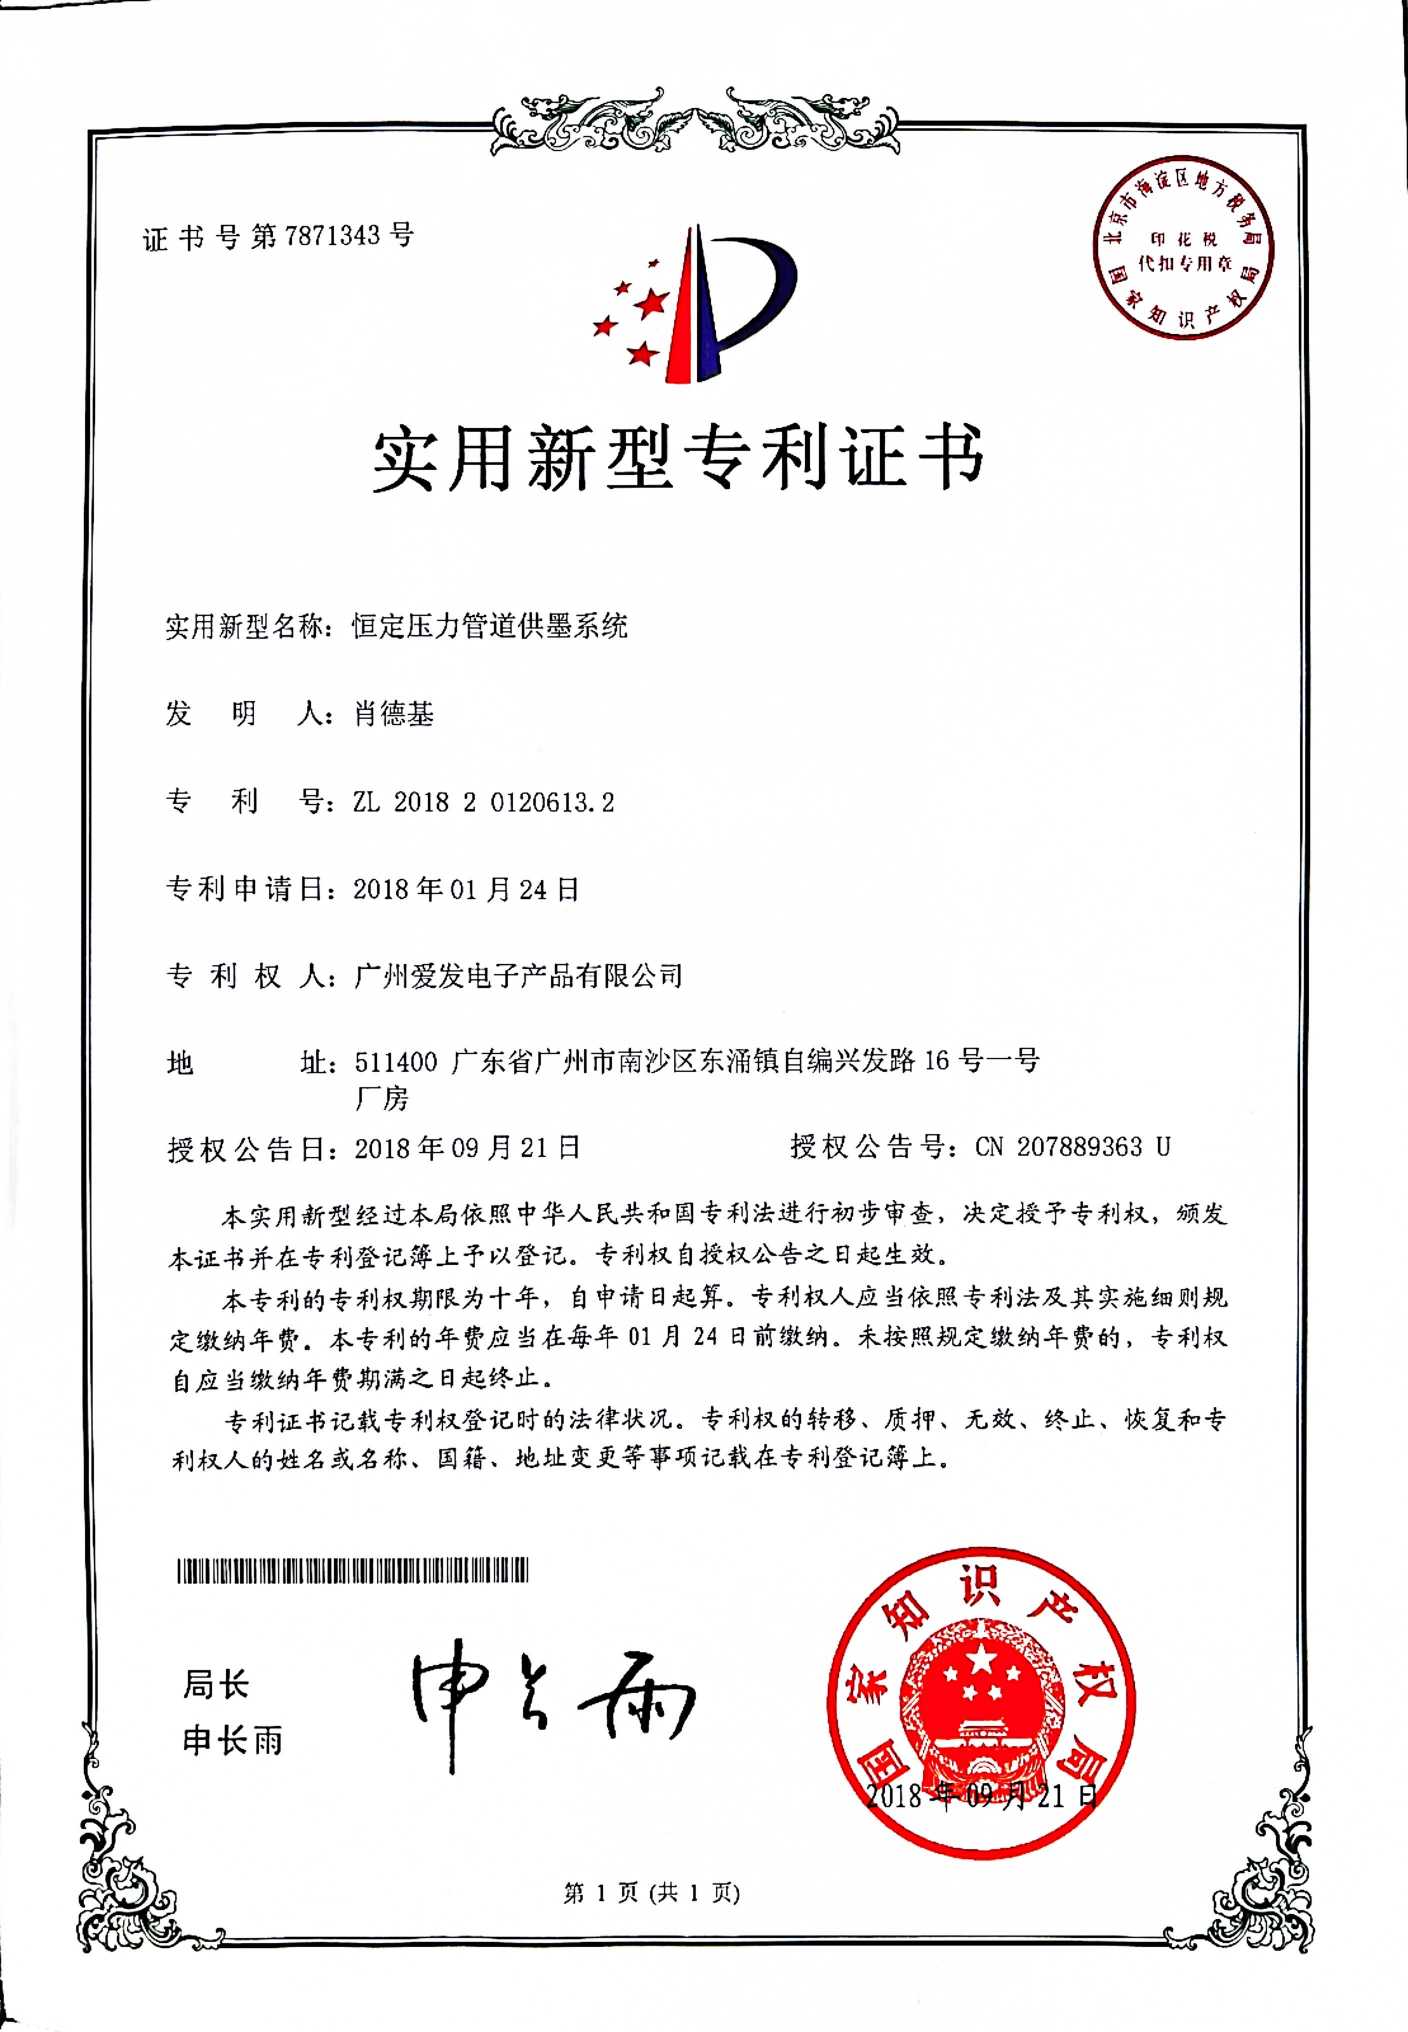 Certificat d'invention de brevet